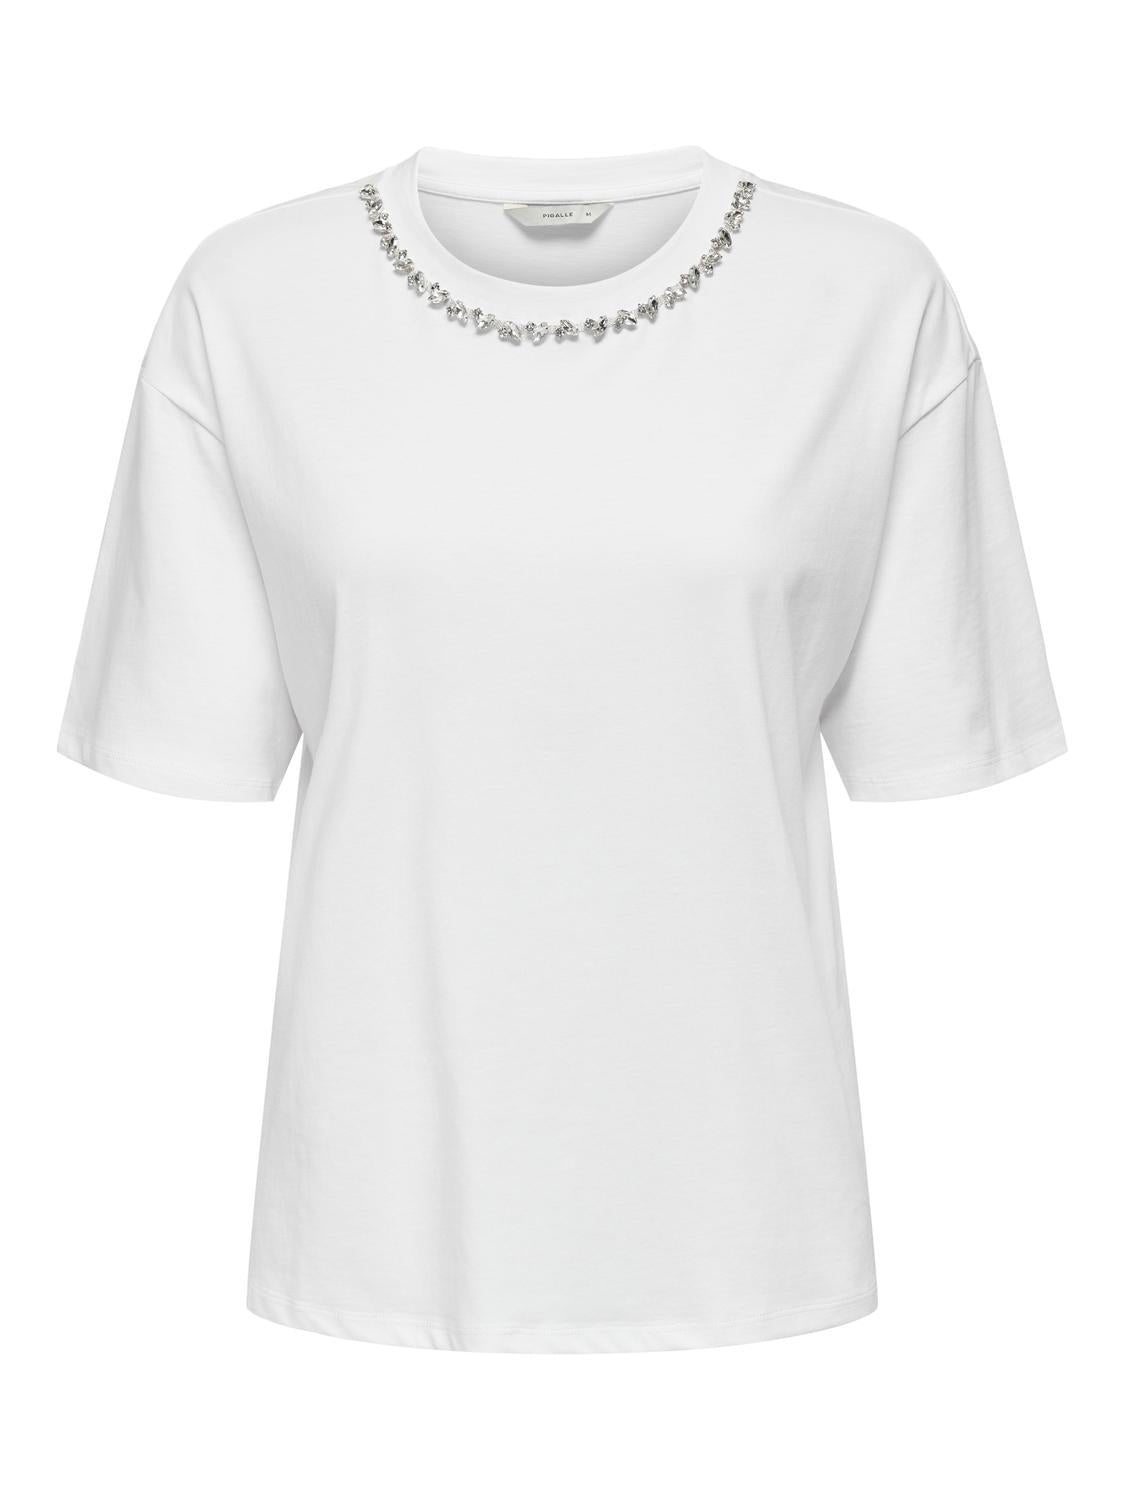 PGCATINA T-Shirt - White